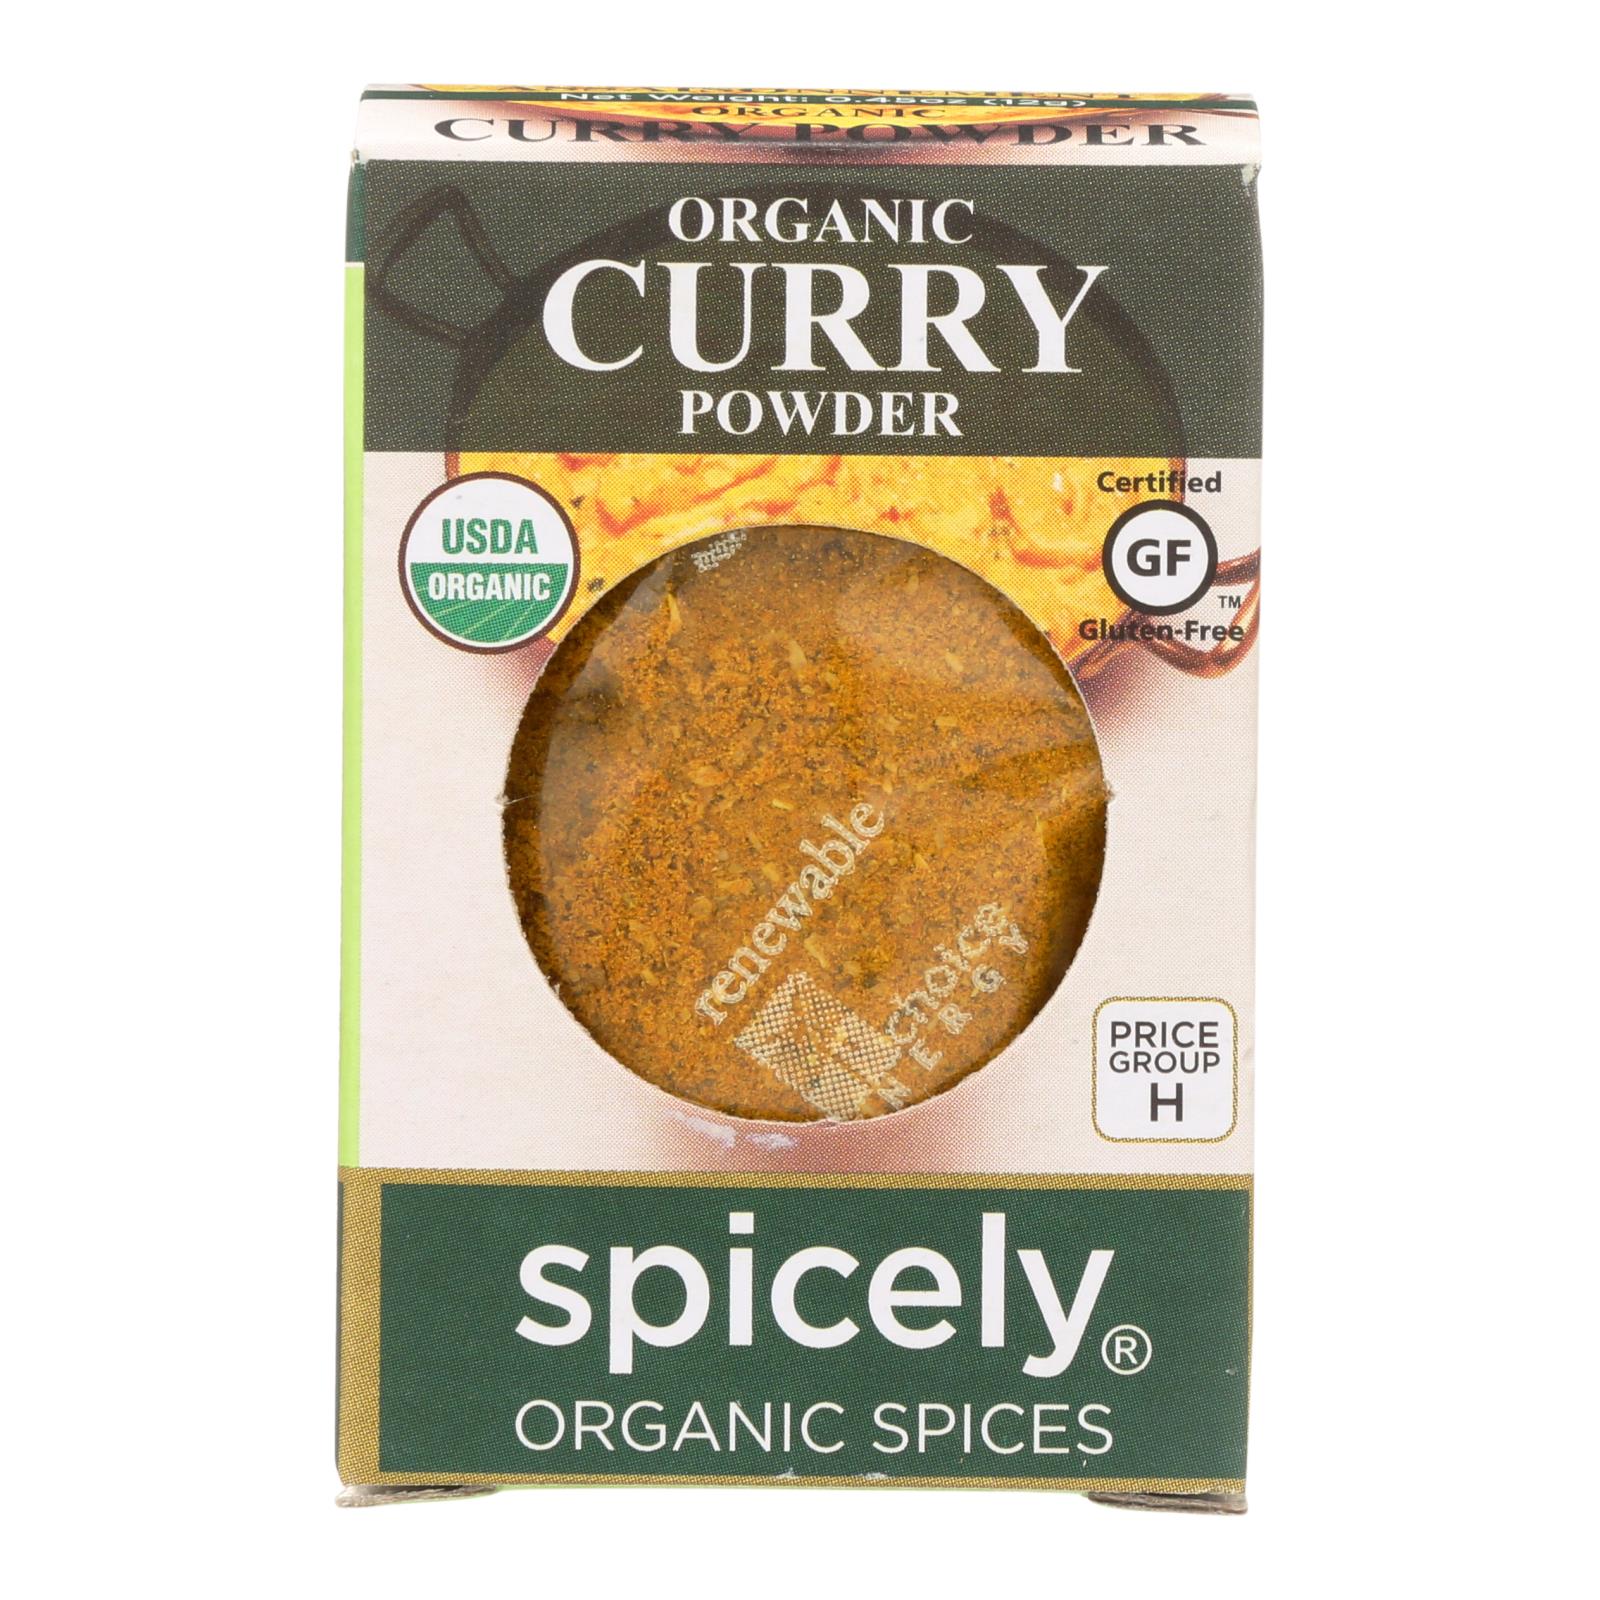 Spicely Organics - Organic Curry Powder - 6개 묶음상품 - 0.45 oz.